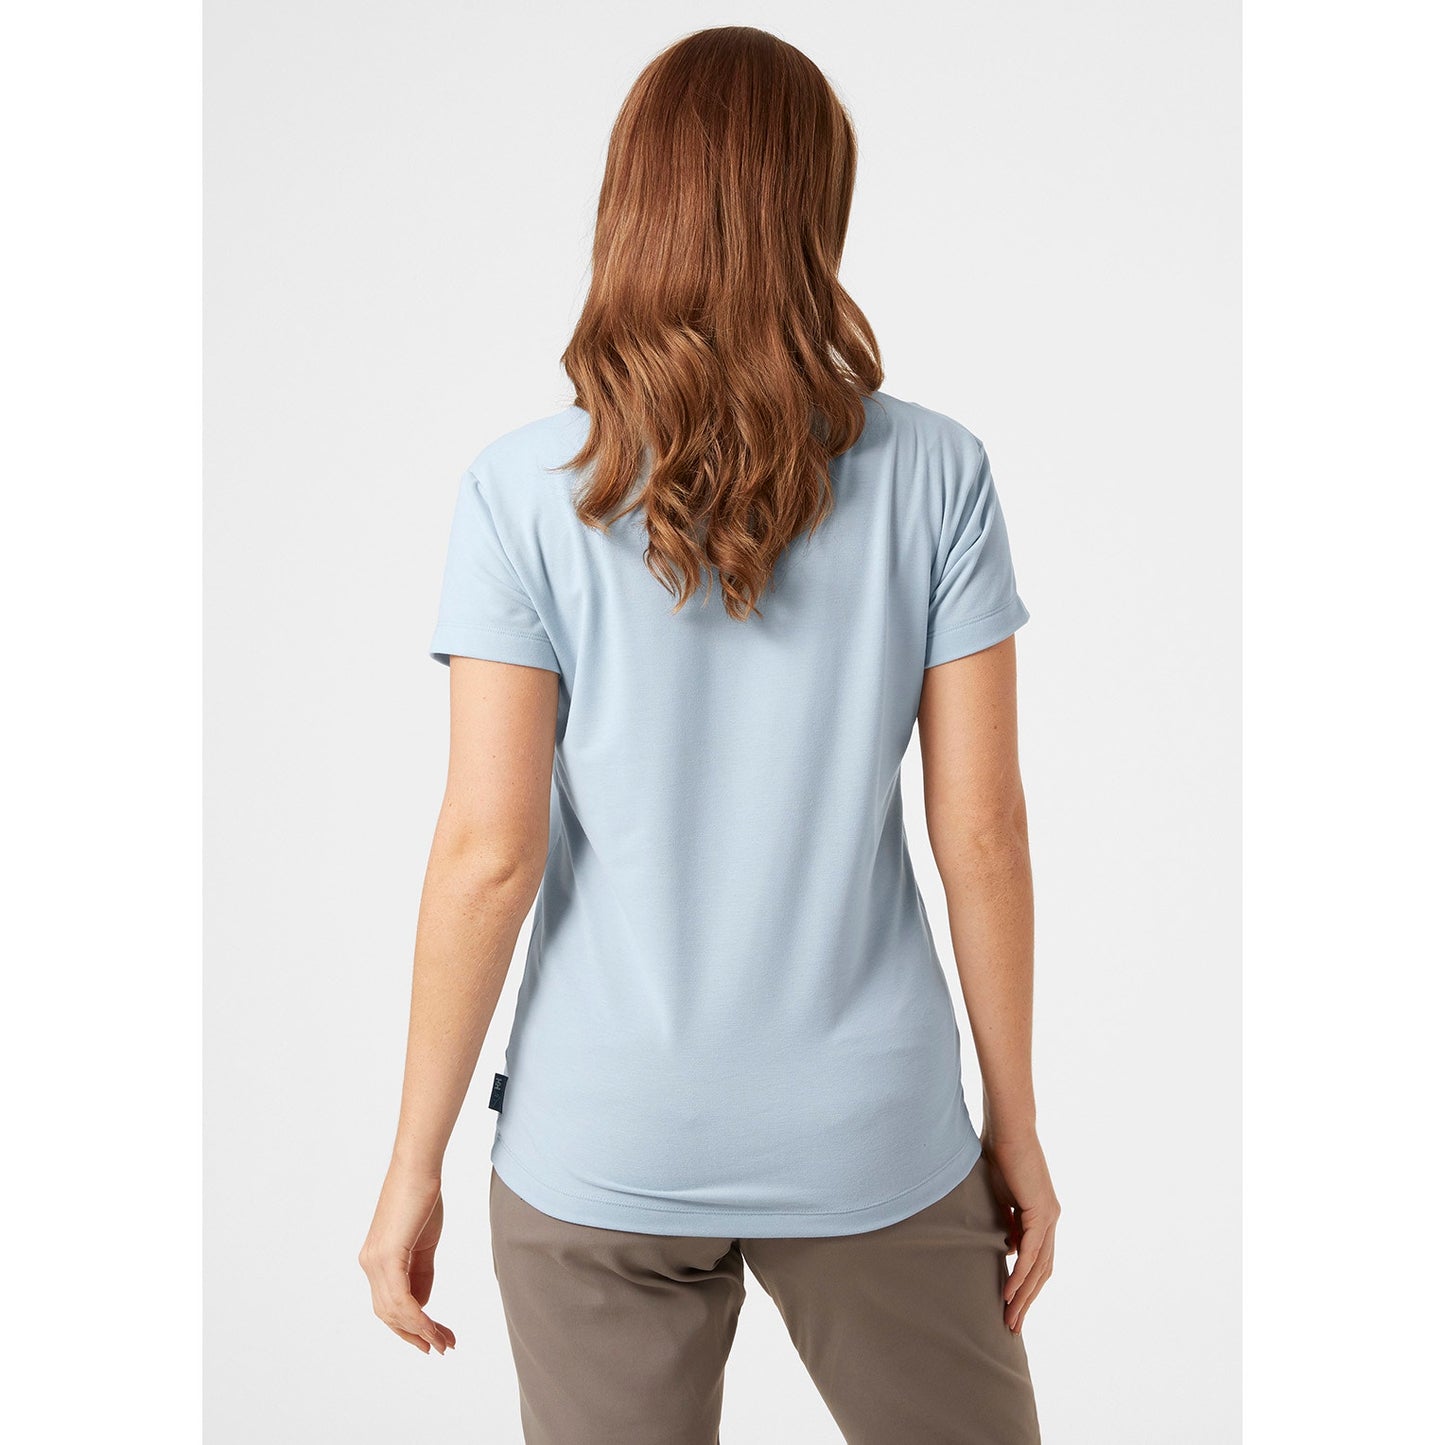 Helly Hansen Women's Skog Recycled Graphic T-Shirt Blue